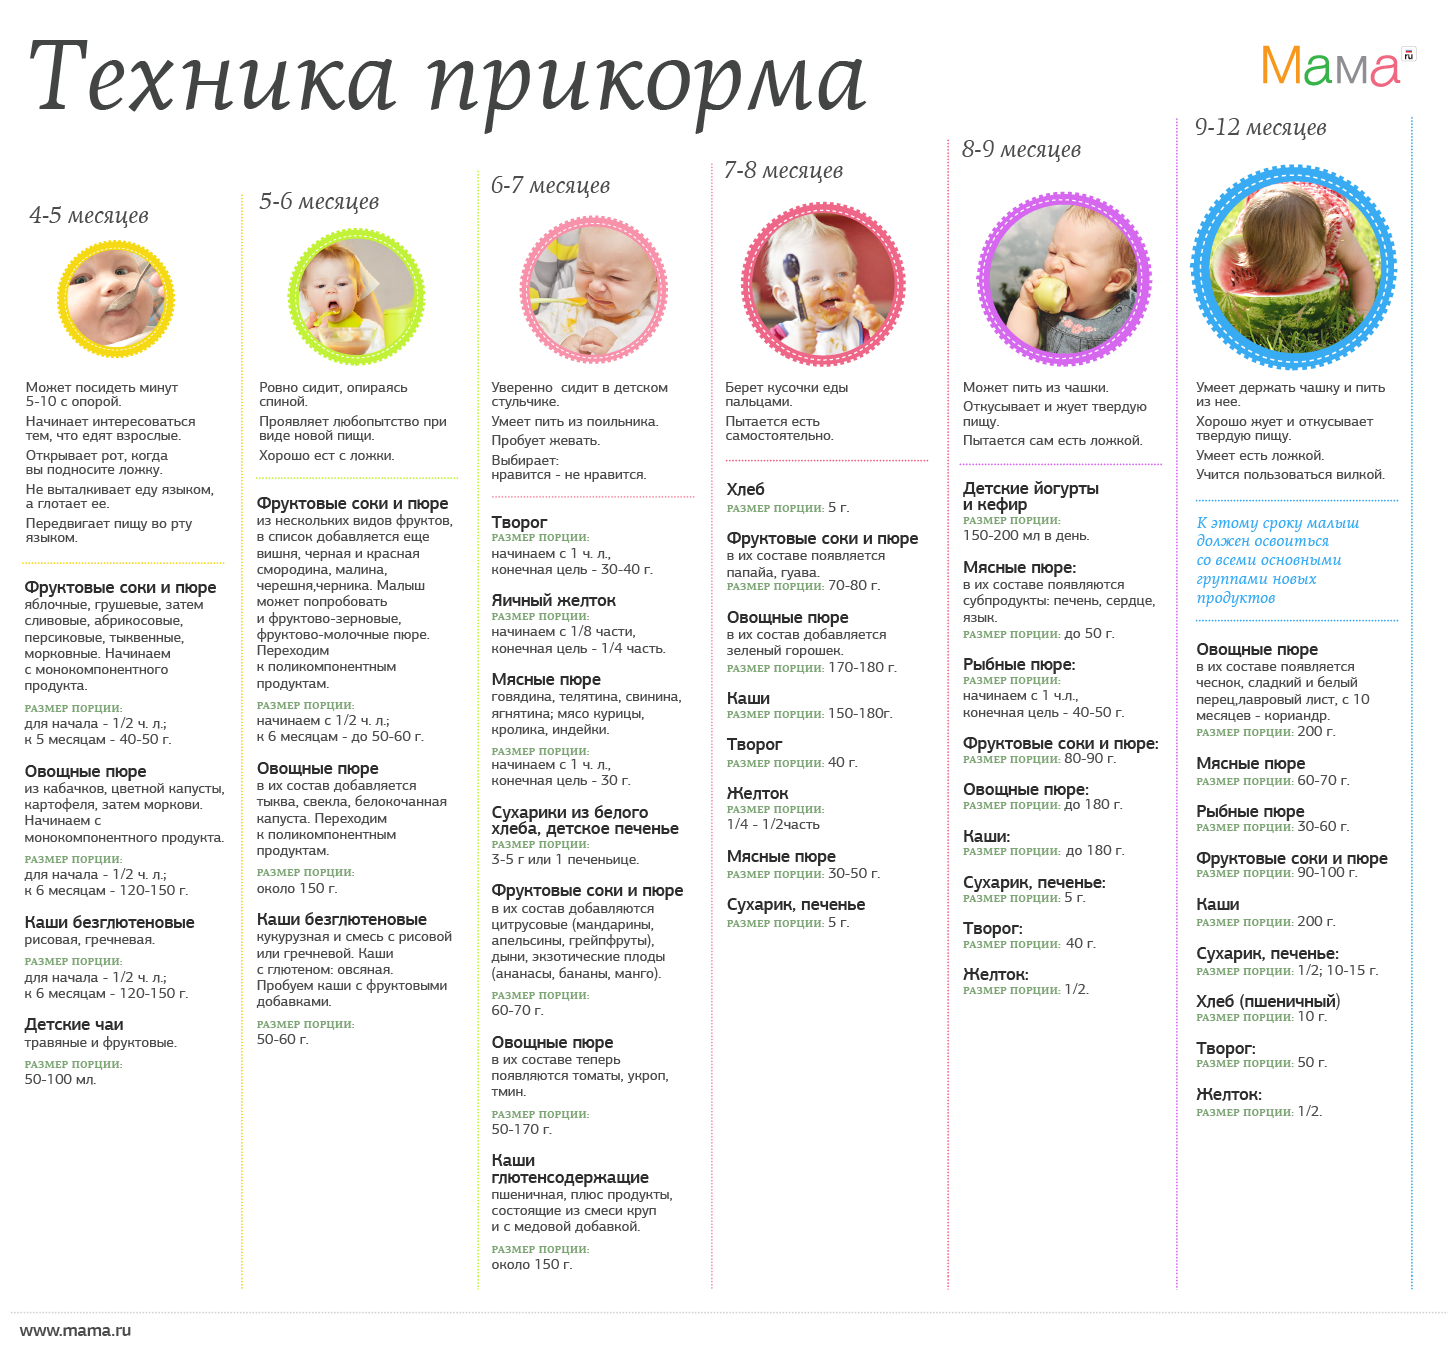 Как вводить прикорм ребенку в 5 месяцев: пошаговое описание